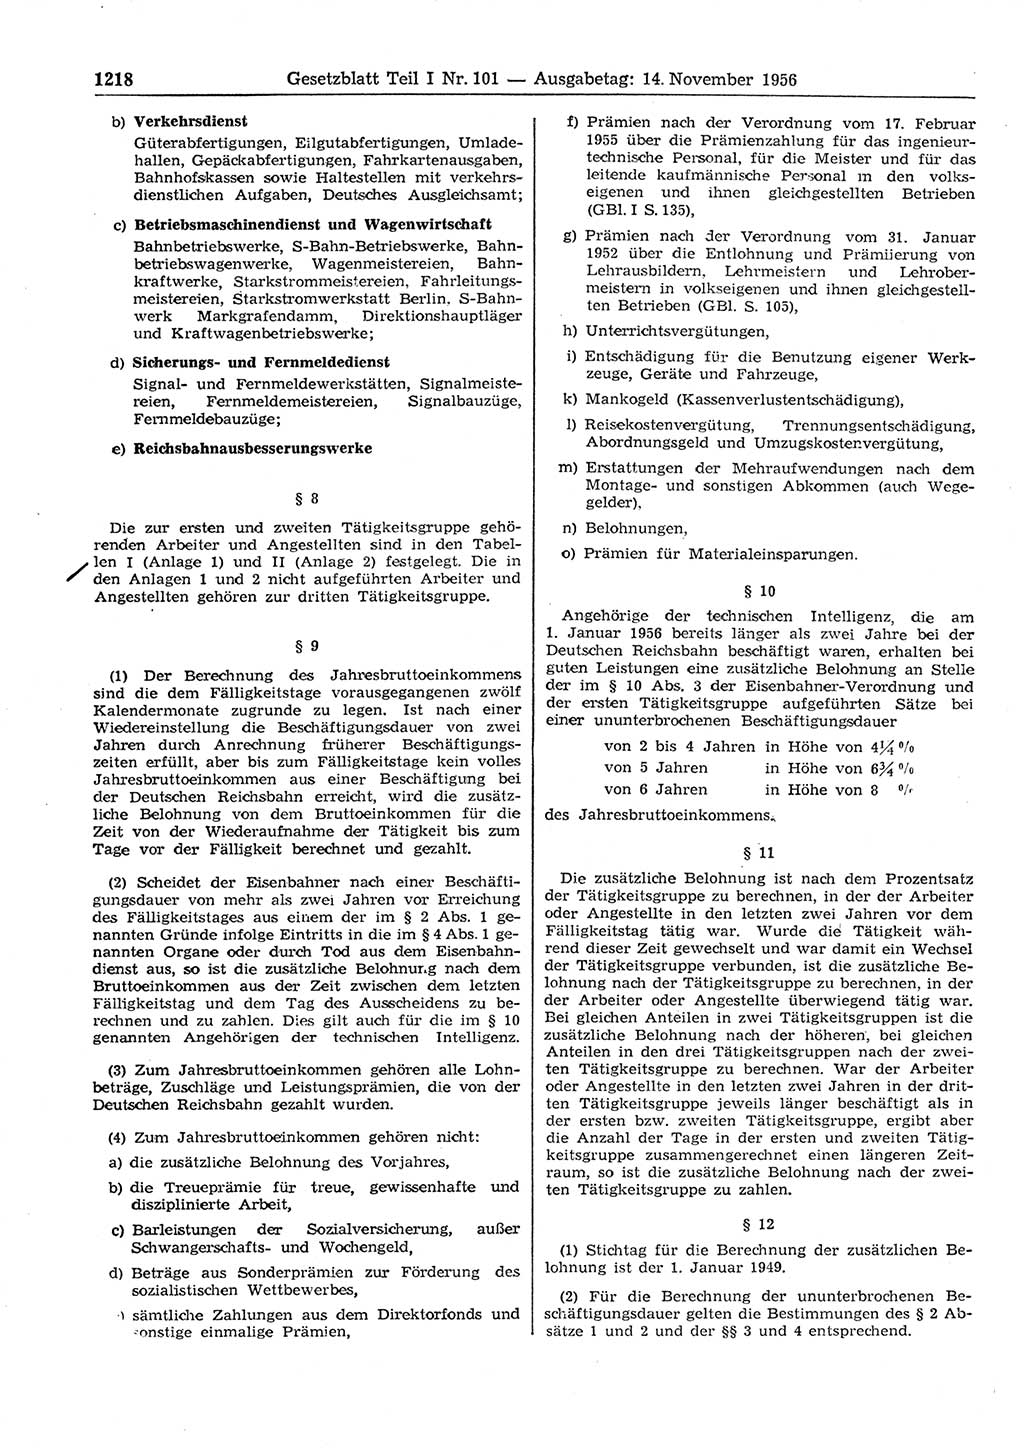 Gesetzblatt (GBl.) der Deutschen Demokratischen Republik (DDR) Teil Ⅰ 1956, Seite 1218 (GBl. DDR Ⅰ 1956, S. 1218)